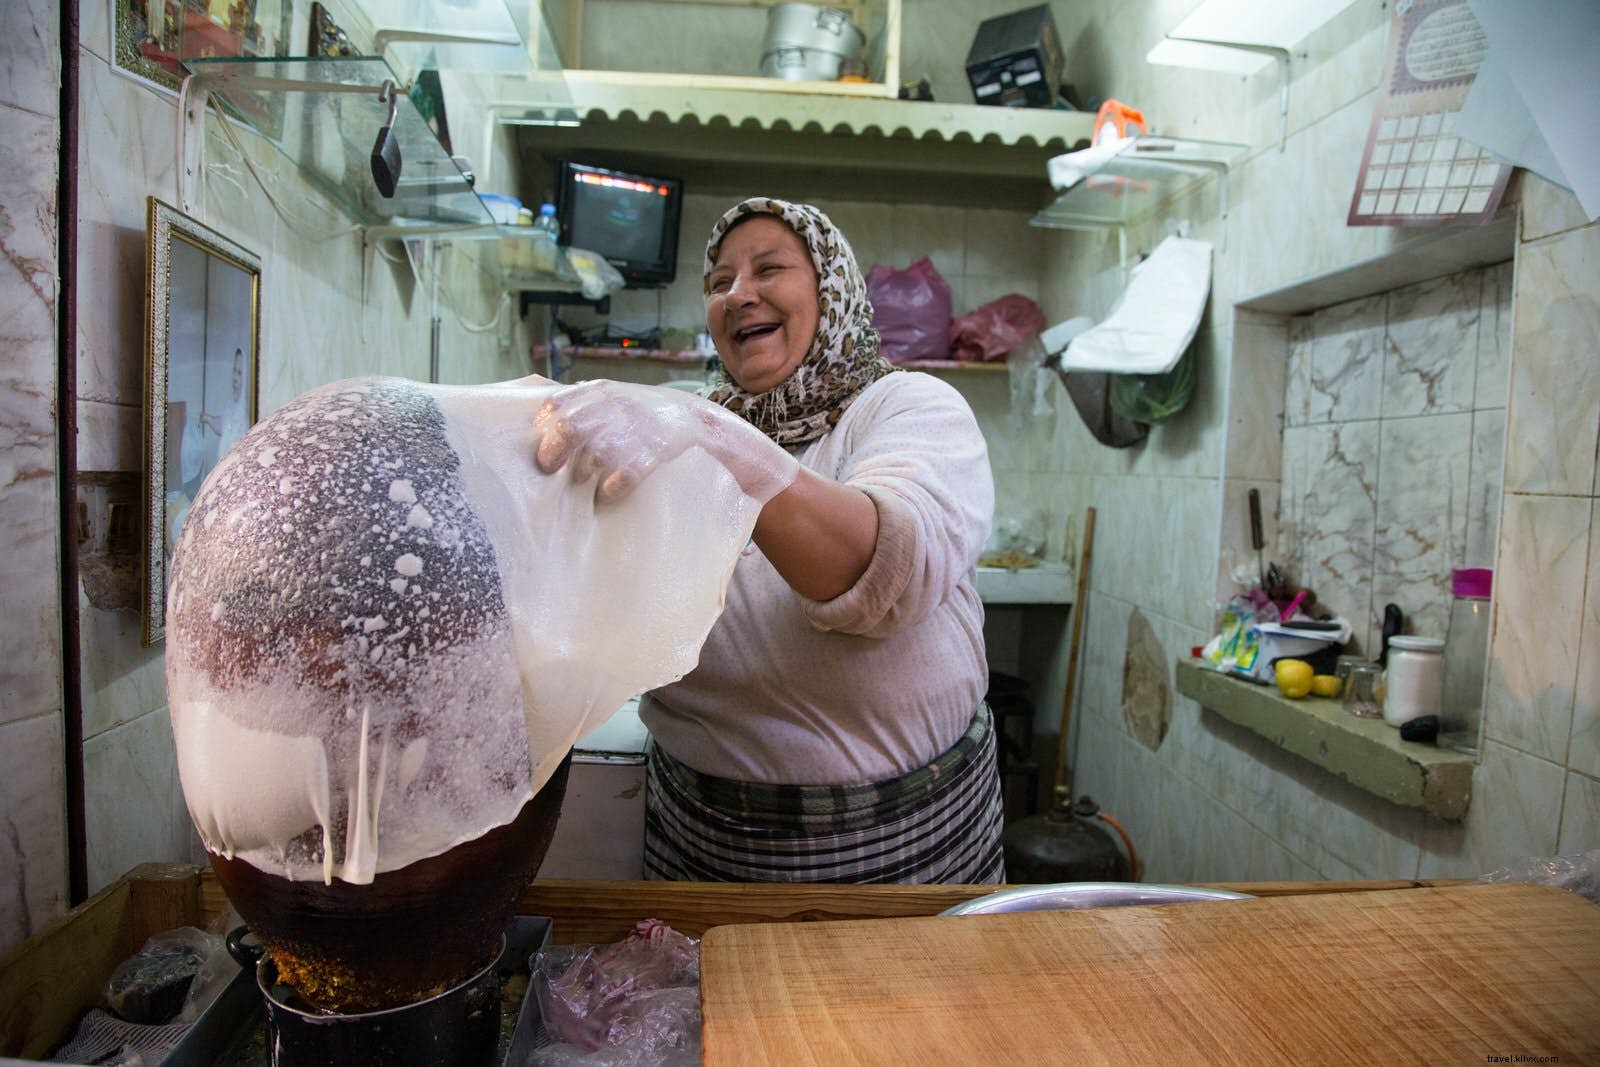 Siguiendo el rastro gastronómico en Fez, Capital culinaria de Marruecos 